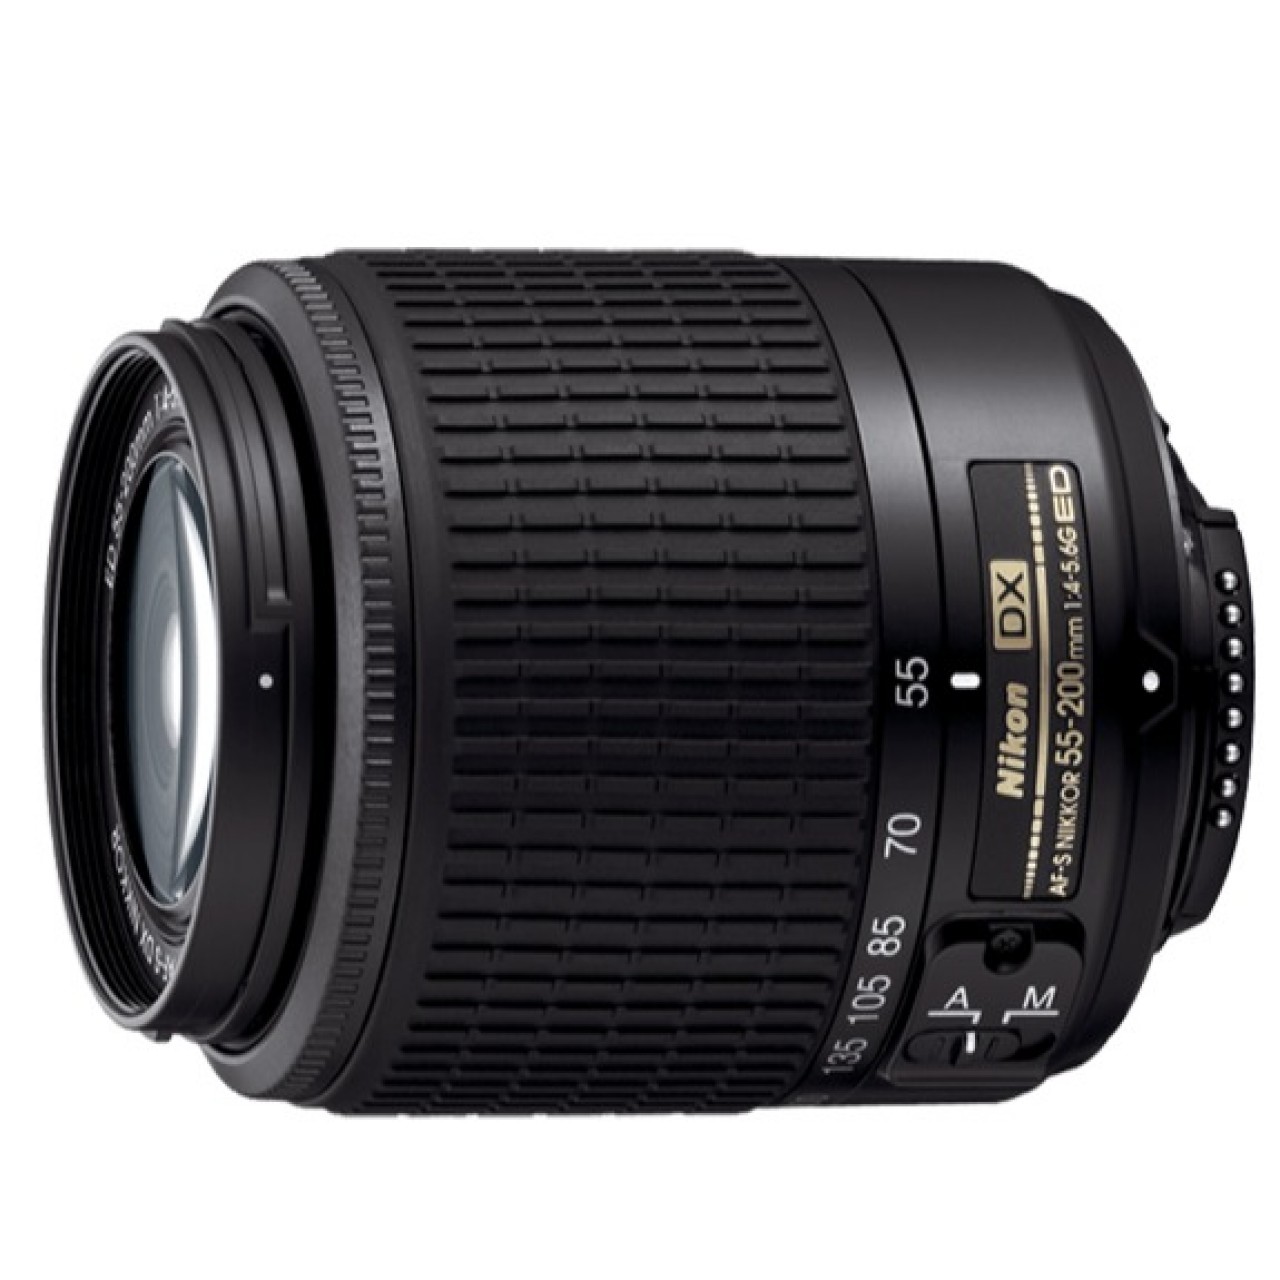 AF-S DX Zoom-NIKKOR 55-200mm f/4-5.6G ED Lens For Nikon DSLR Camera